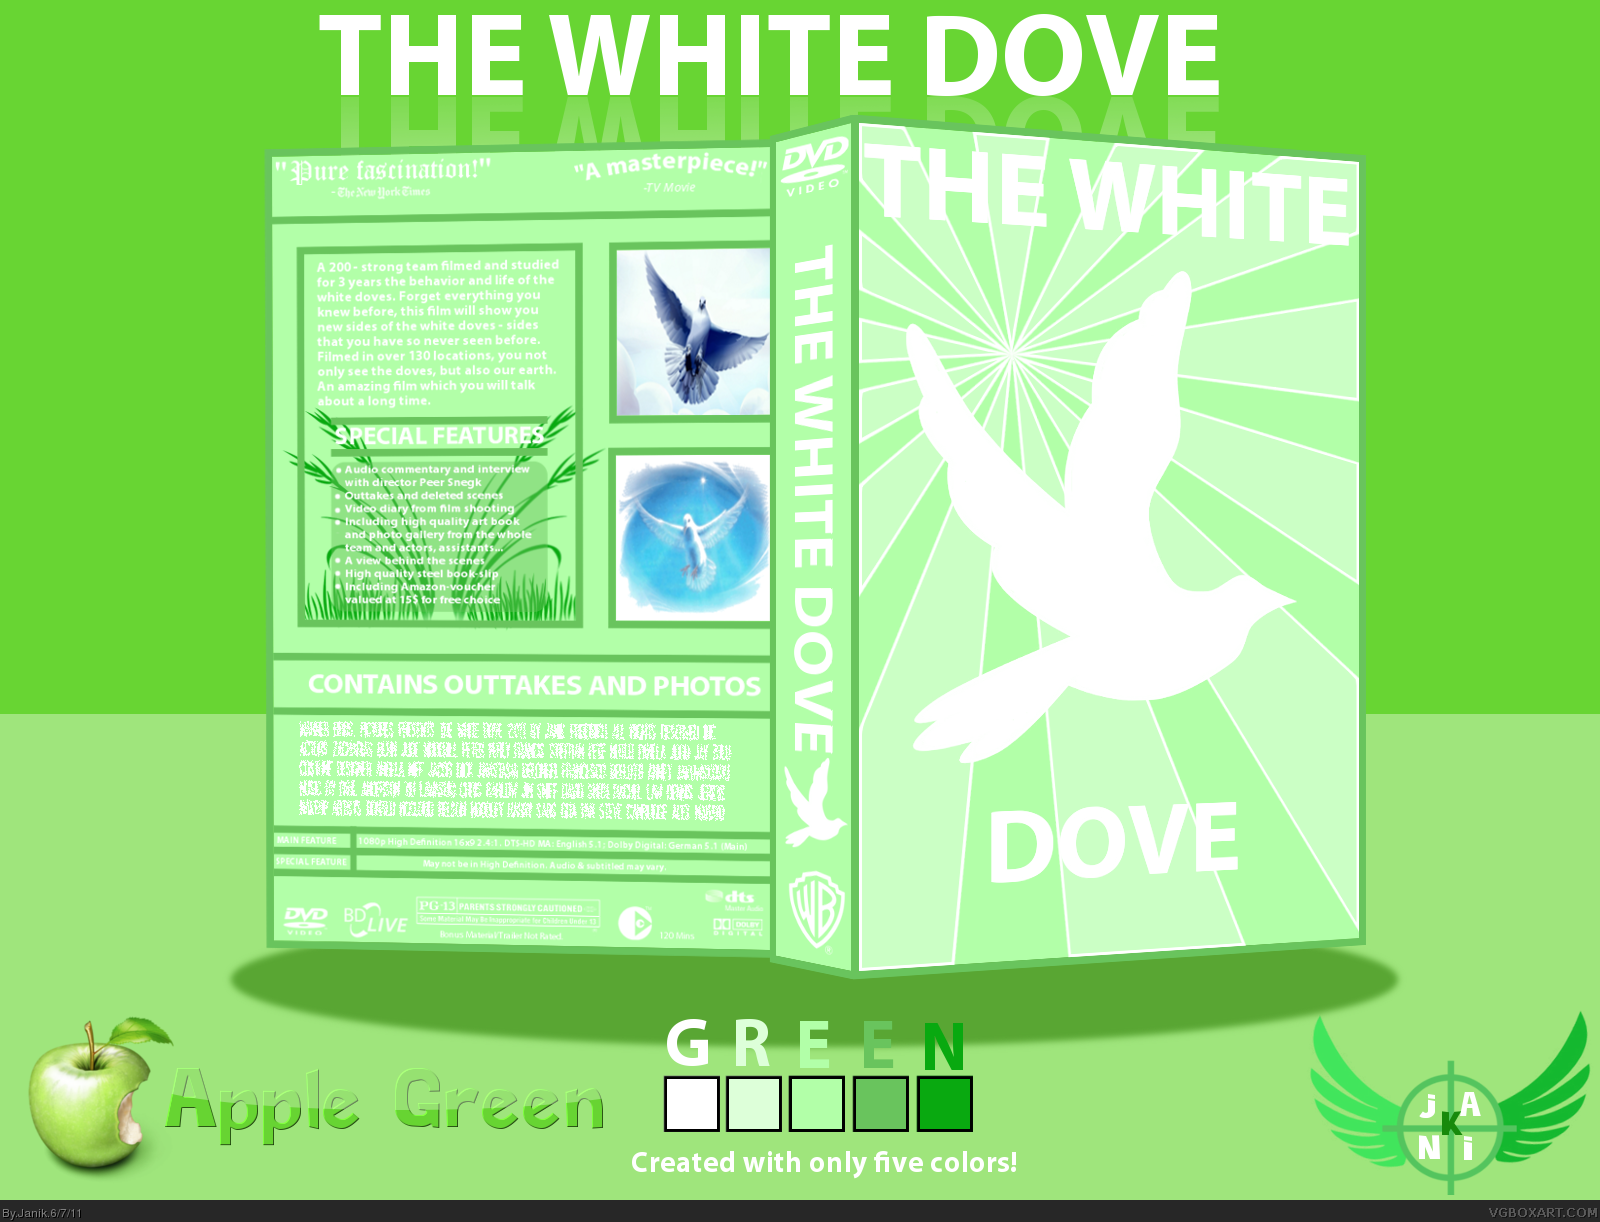 THE WHITE DOVE box cover